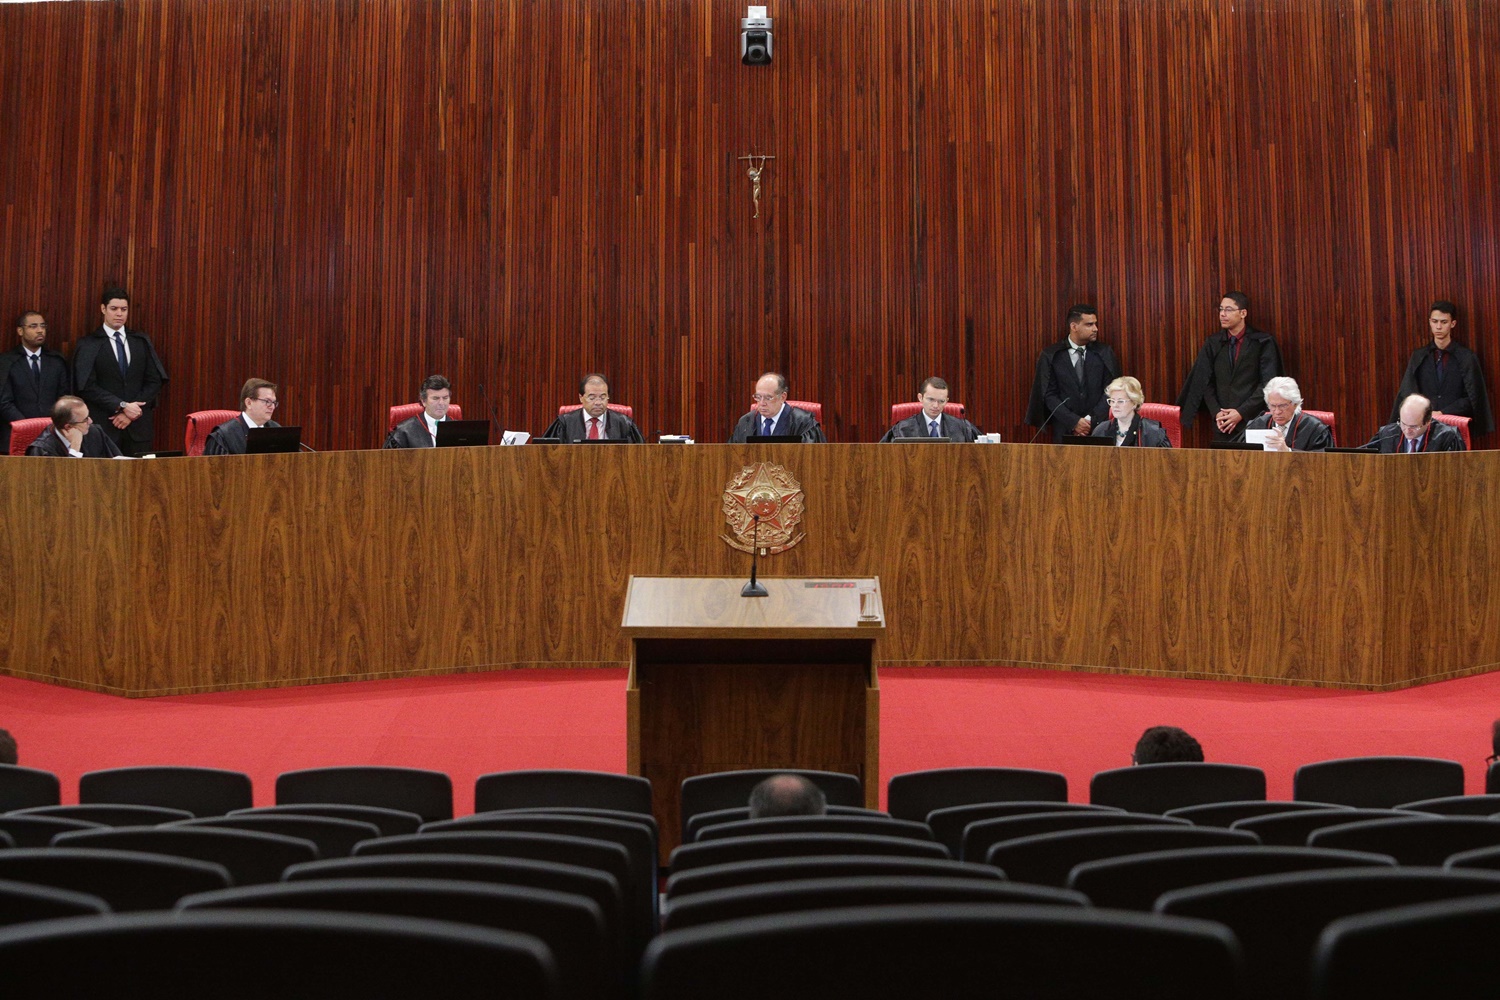 Vista geral do plenário no quarto dia do julgamento da chapa Dilma-Temer, no plenário do TSE